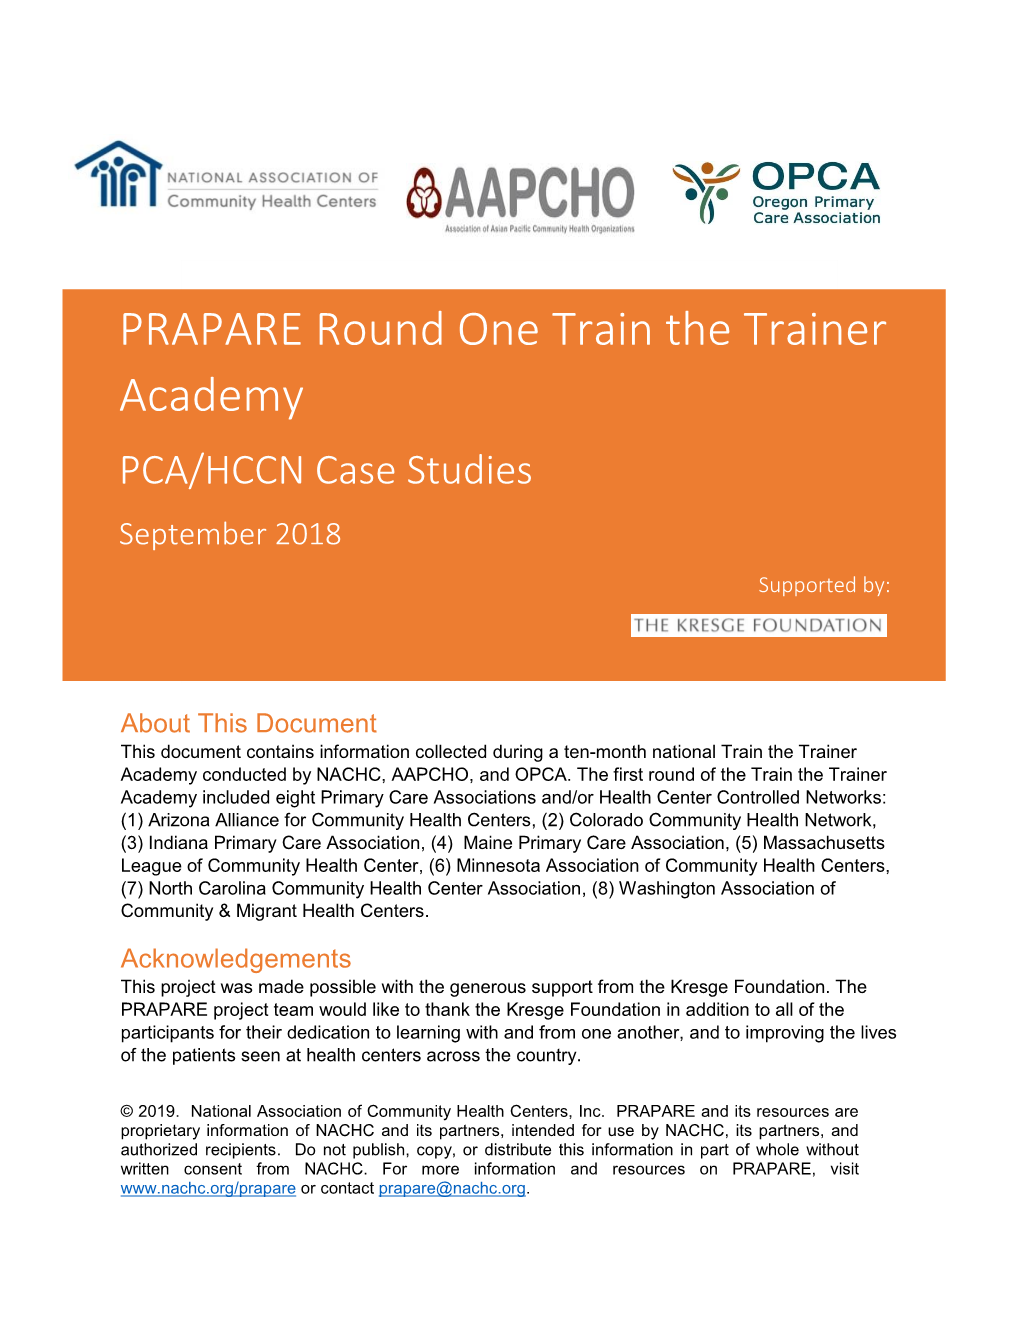 Round One PRAPARE Train the Trainer Academy Case